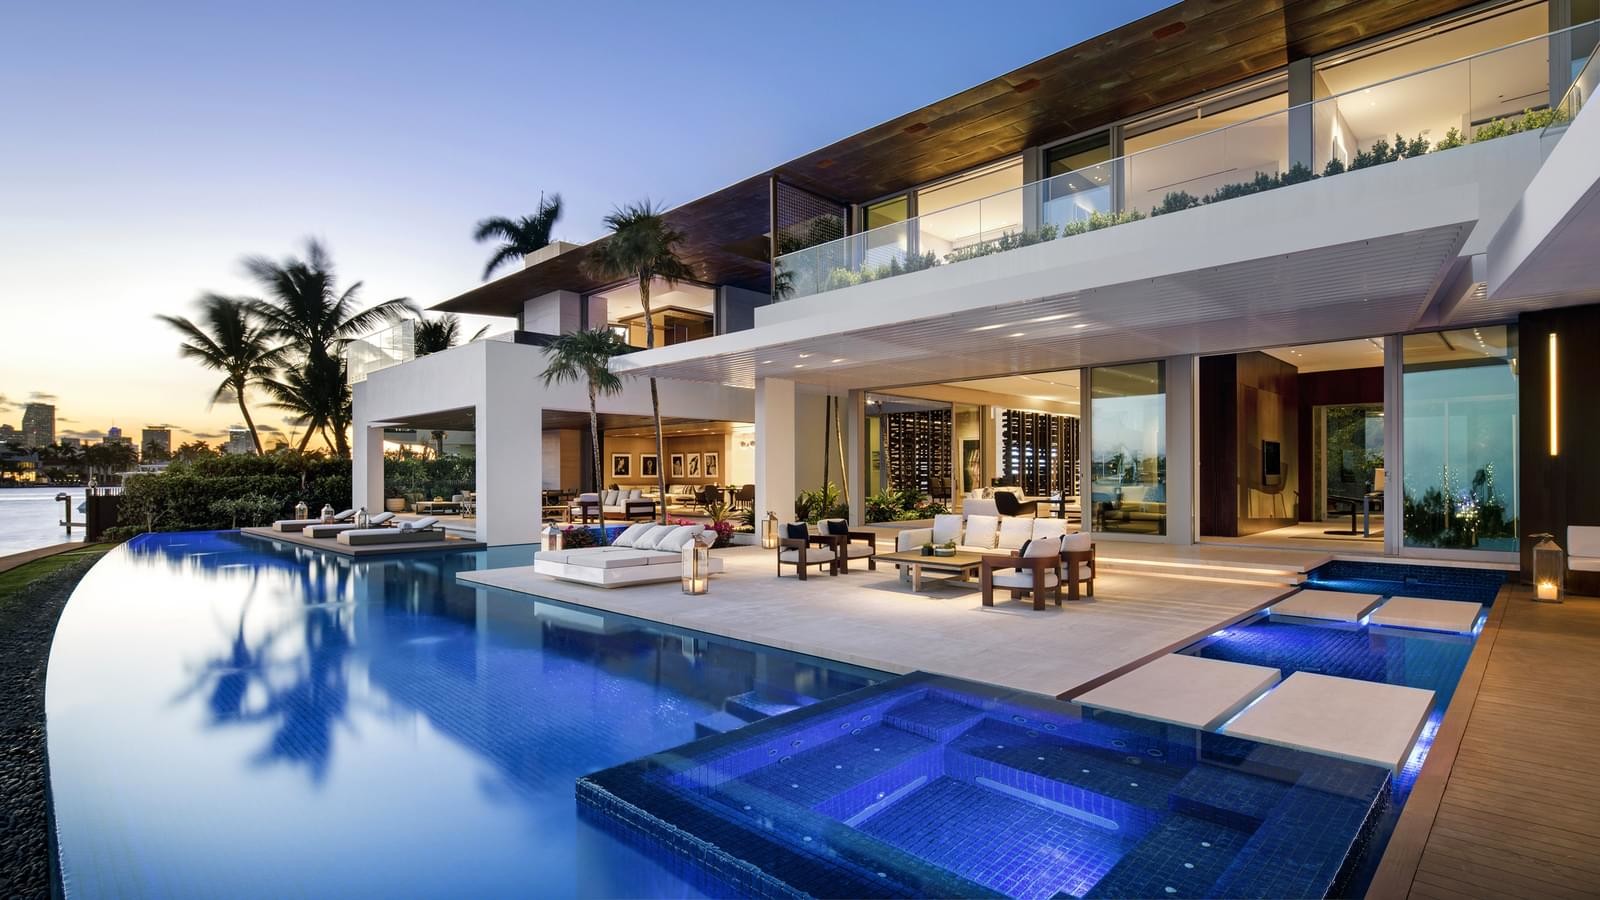 Villa in Miami by SAOTA studio